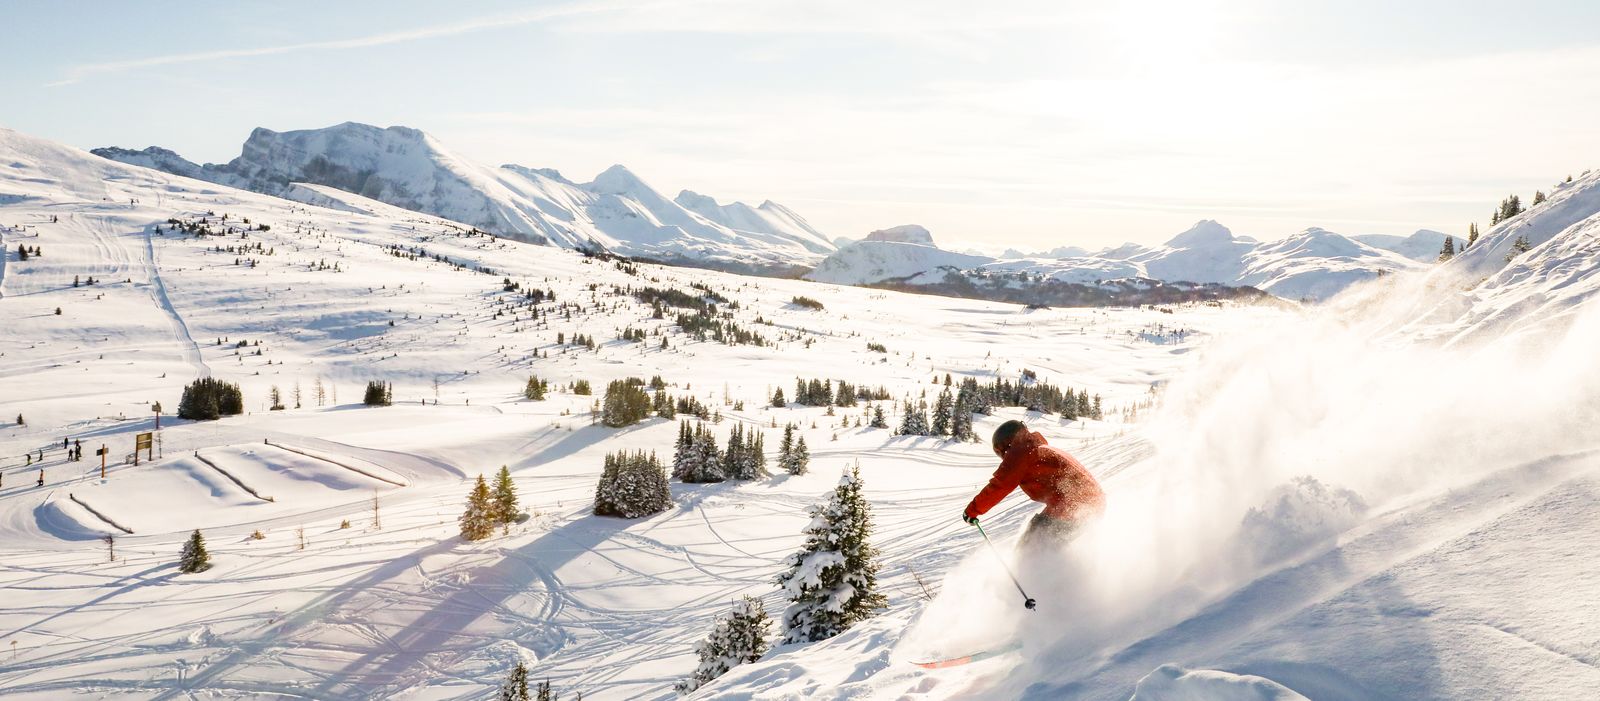 Skifahrer in Banff, Kanada bei strahlendem Sonnenschein und feinstem Powder Schnee